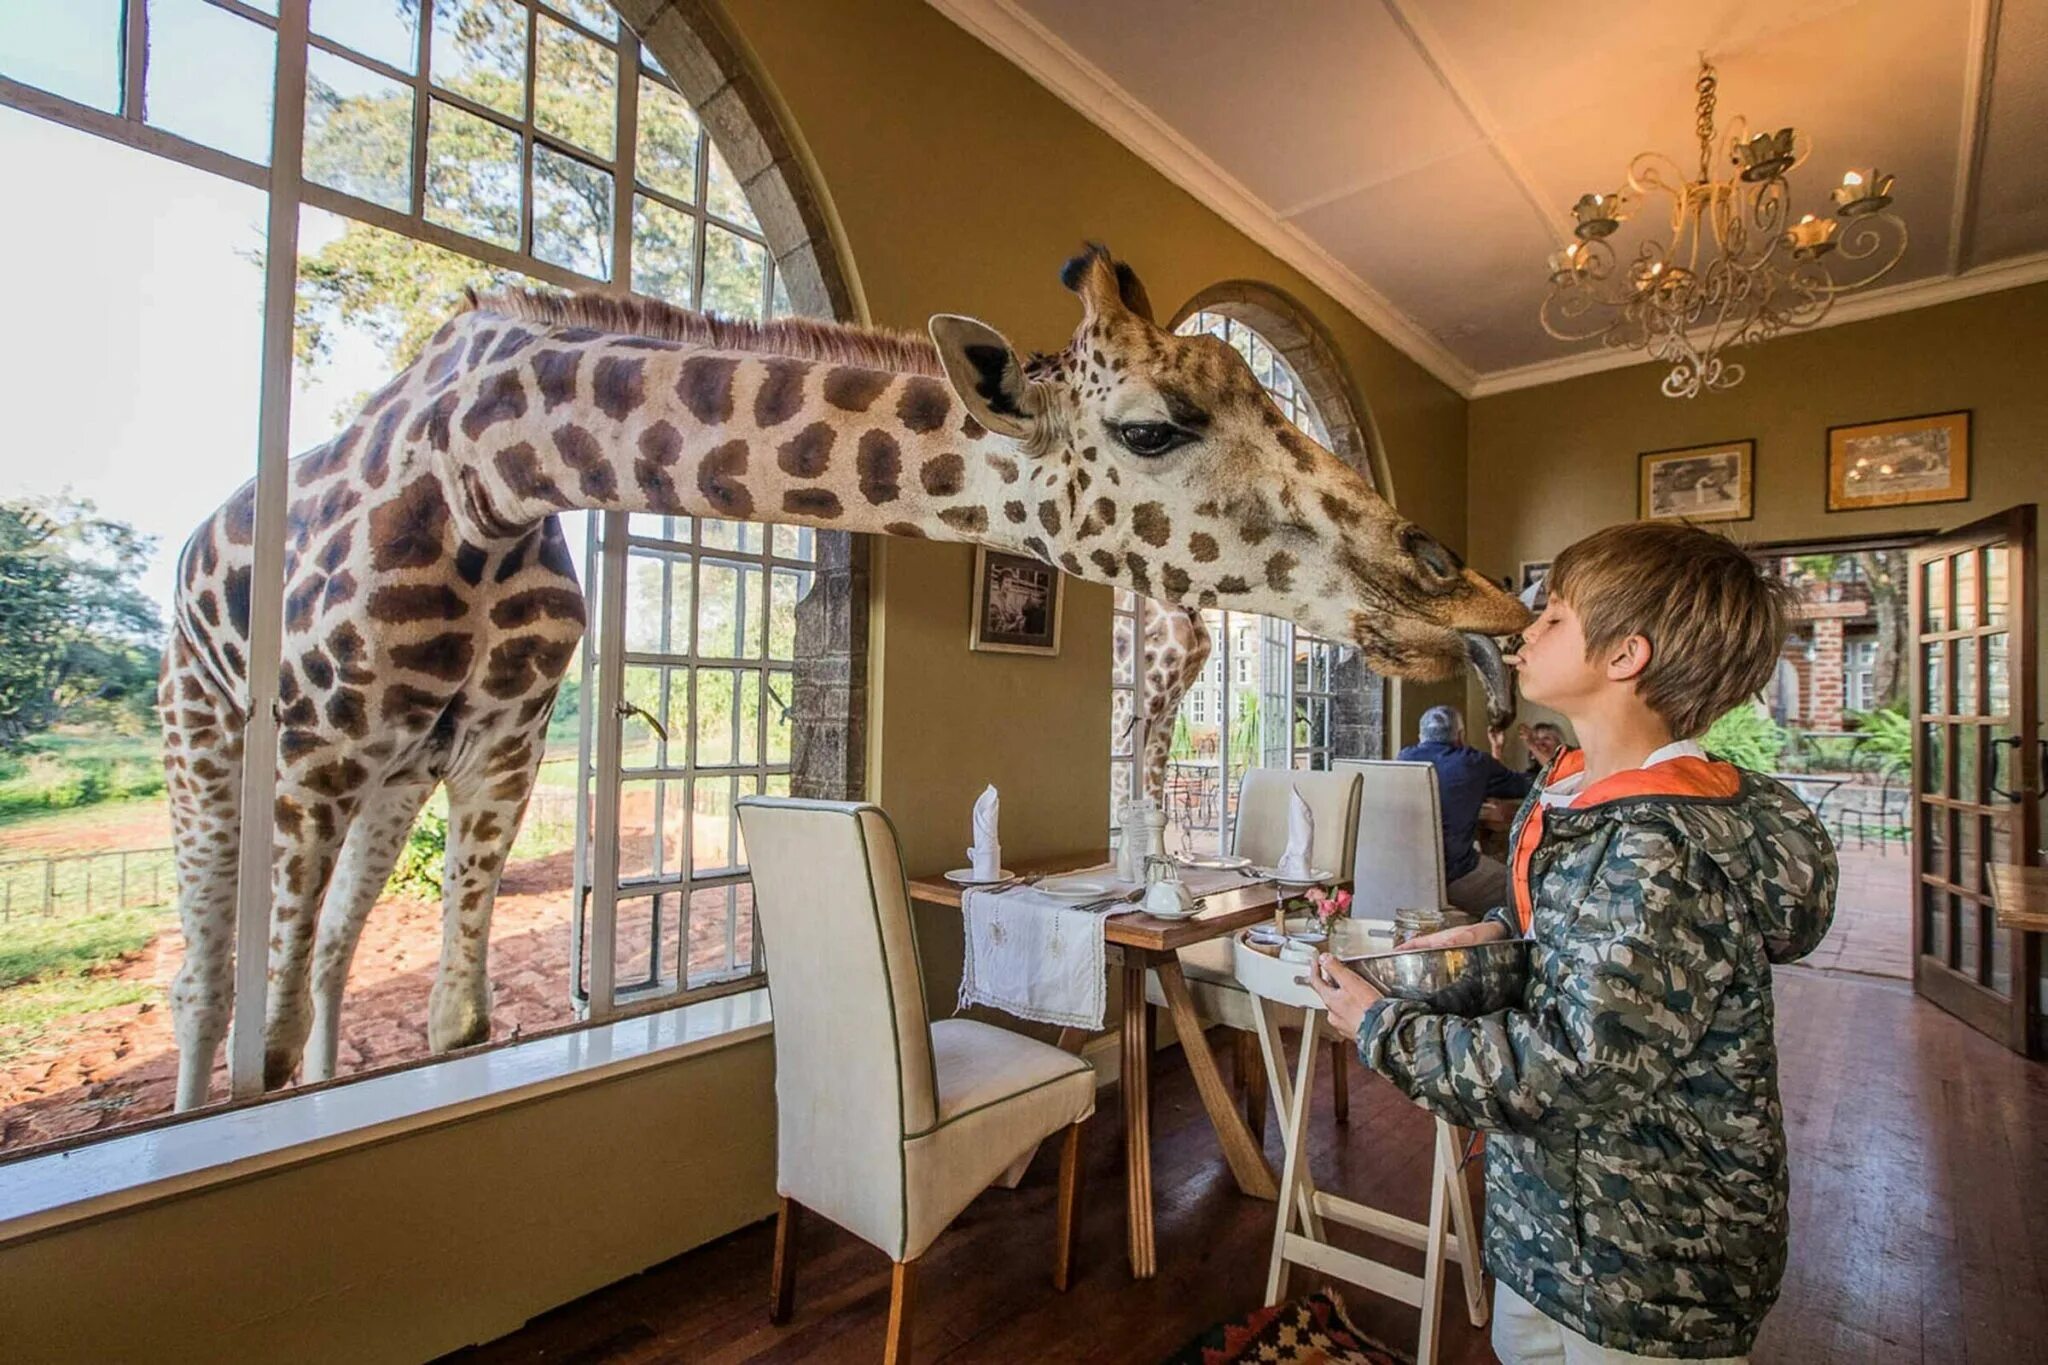 Hotel animal. Отель Жираф Манор в Кении. Отель в Кении Giraffe Manor с жирафами. Giraffe Manor Найроби, Кения. Завтрак с жирафами, Giraffe Manor, Найроби, Кения.